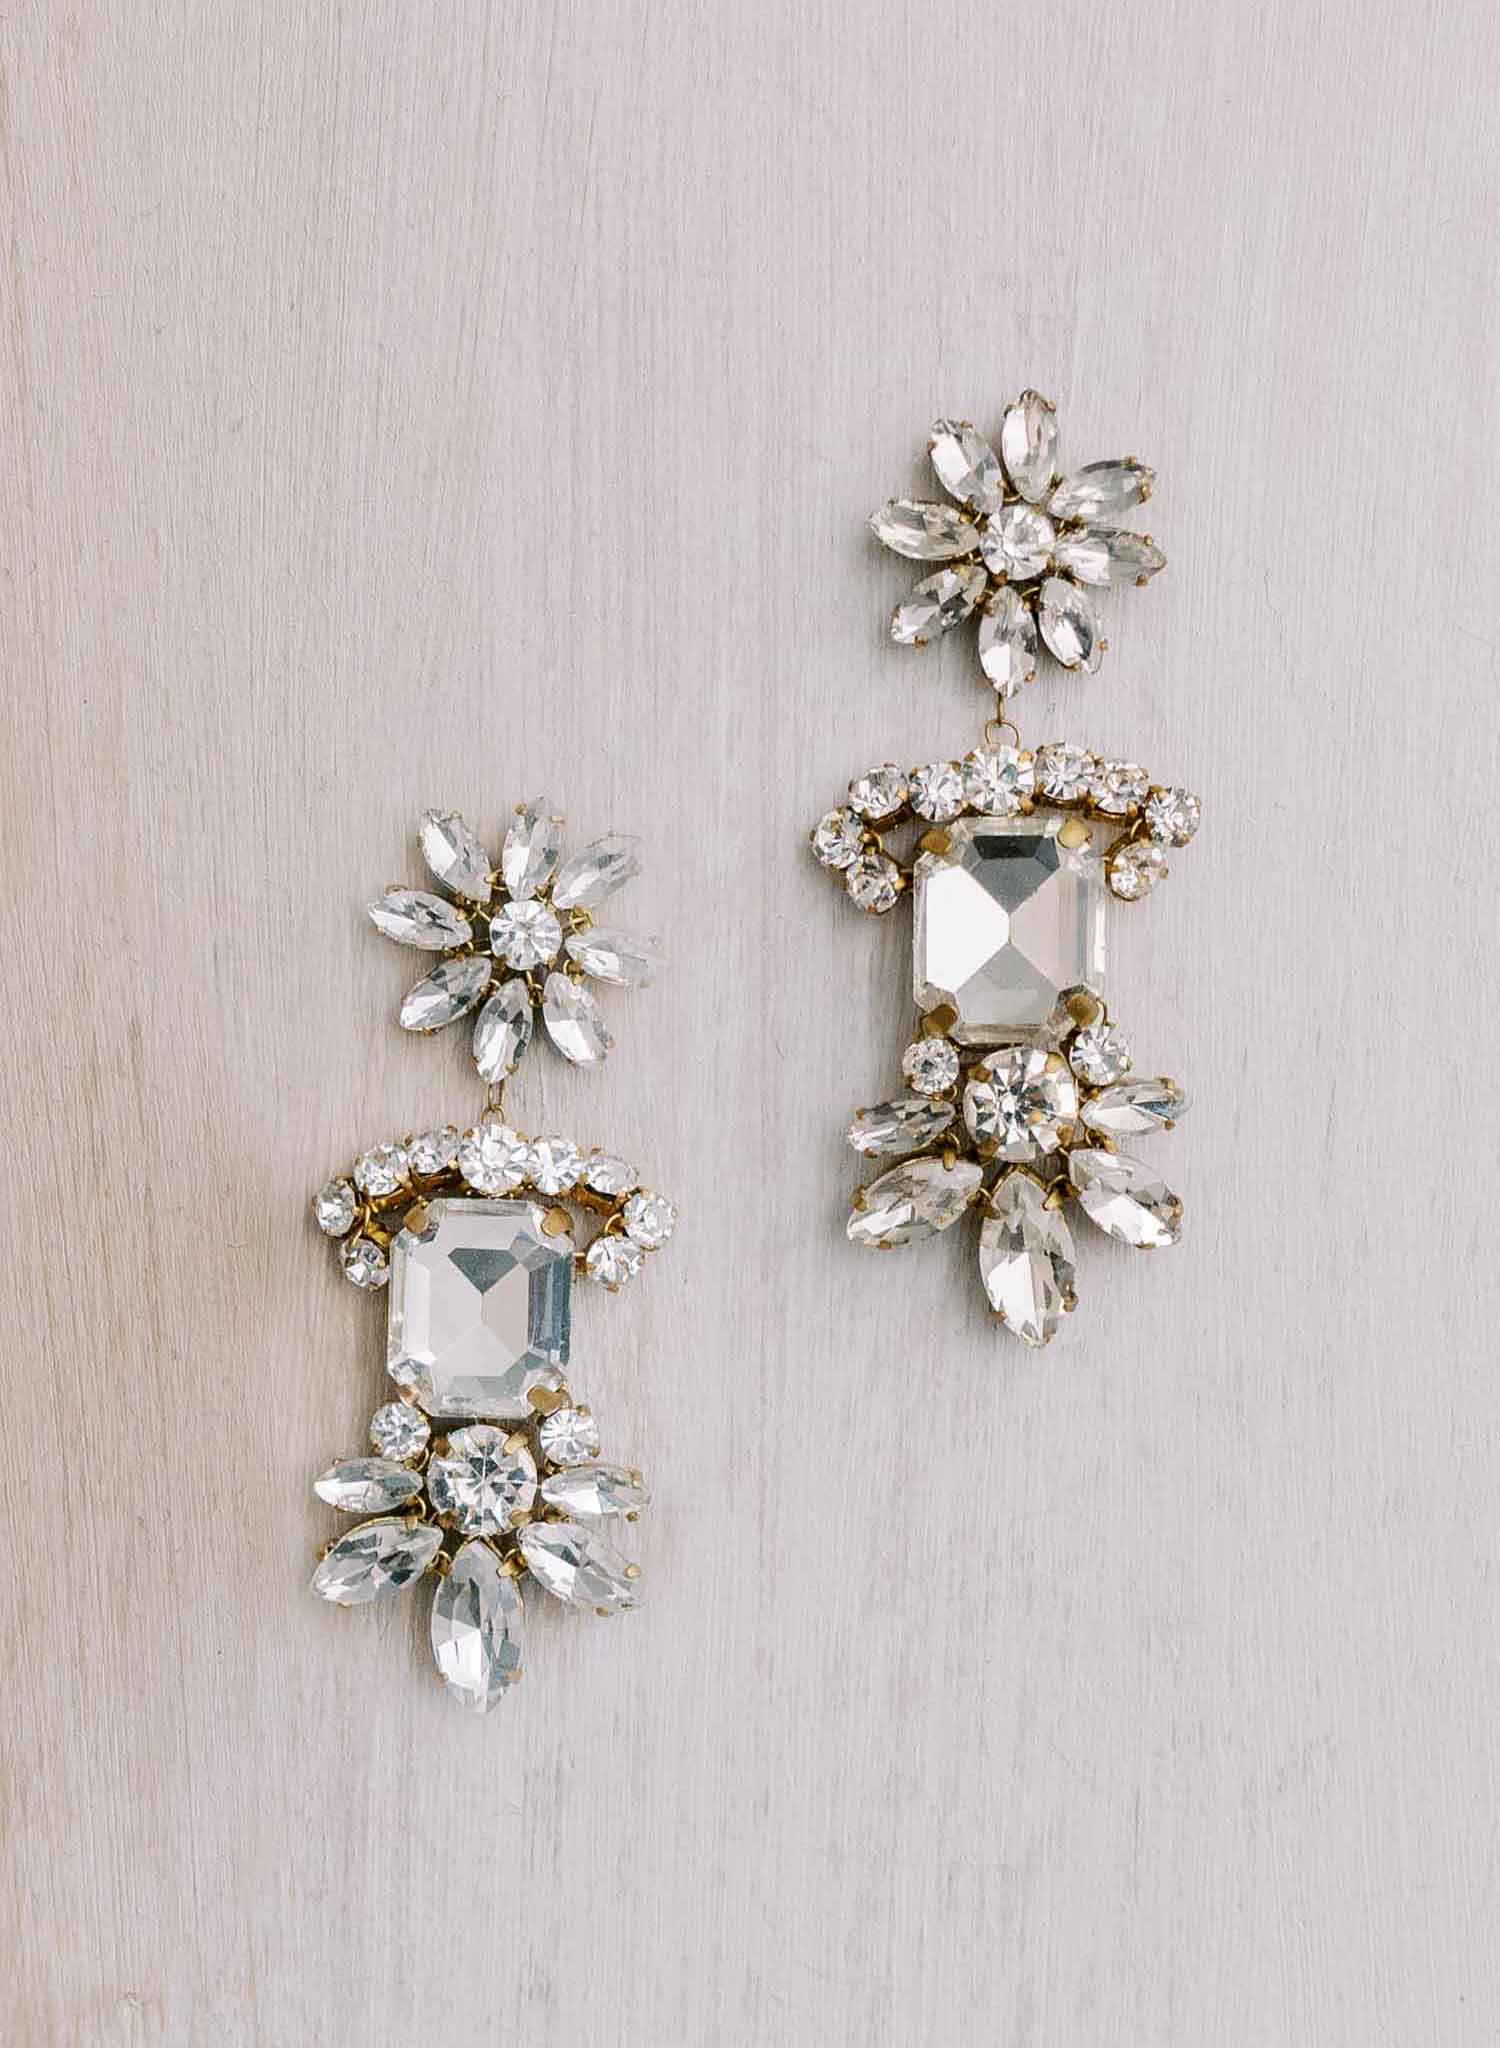 Vintage inspired crystal drop earrings - Style #2118